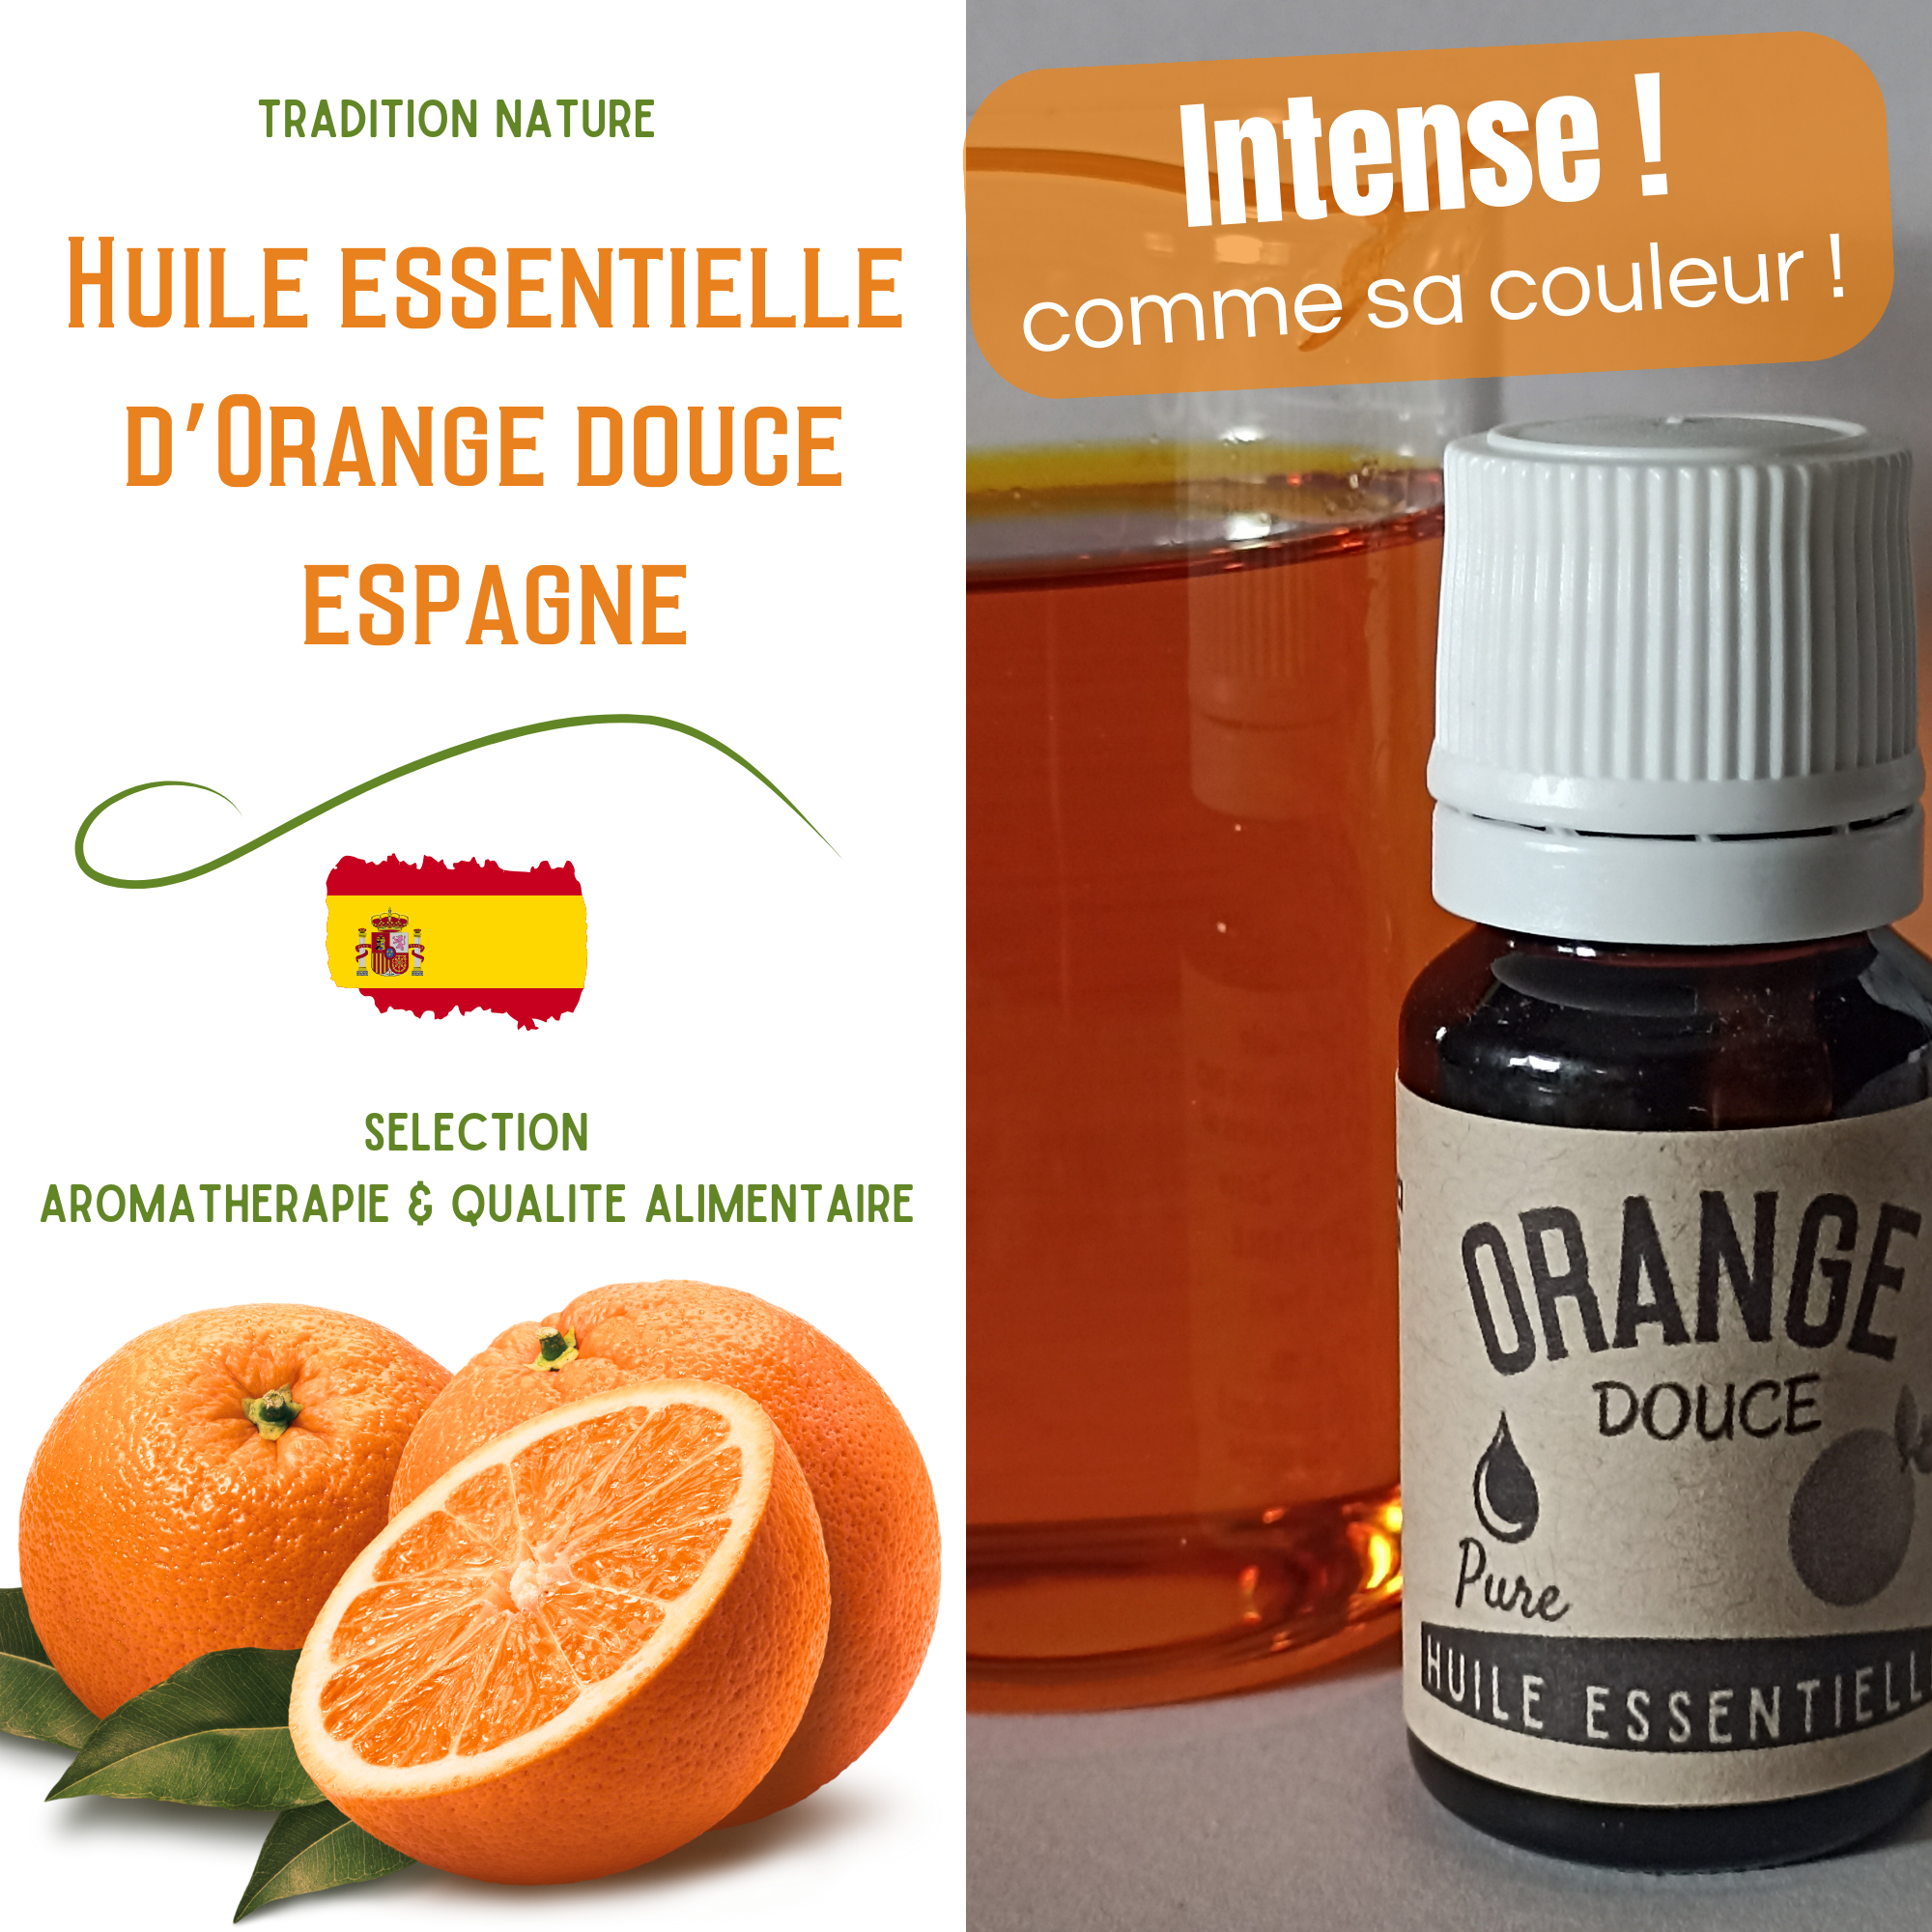 Huile de massage relaxante à l'orange douce et à la cannelle - 100 ml